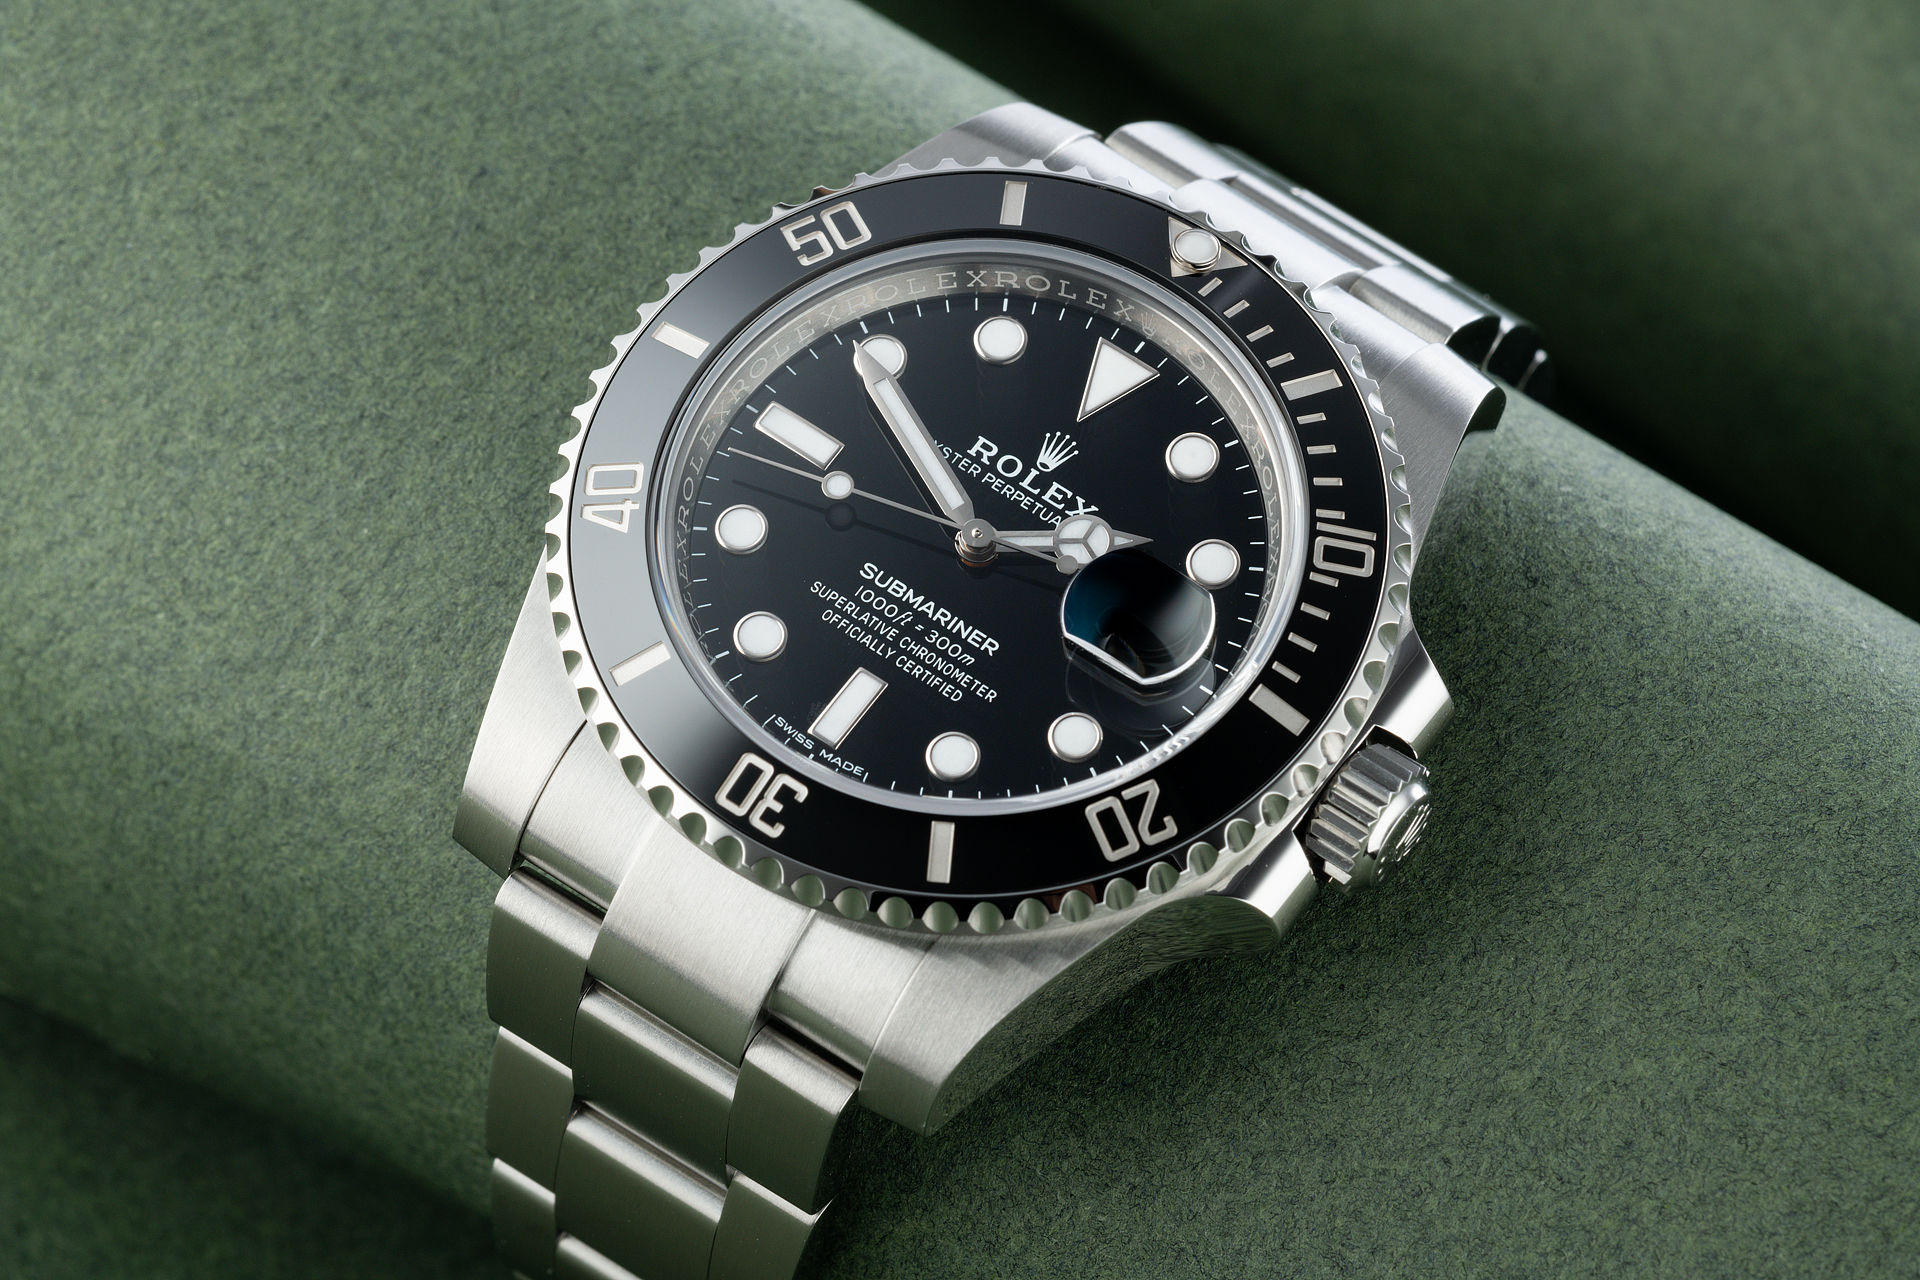 ref 116610LN | '5 Year Rolex Warranty' | Rolex Submariner Date